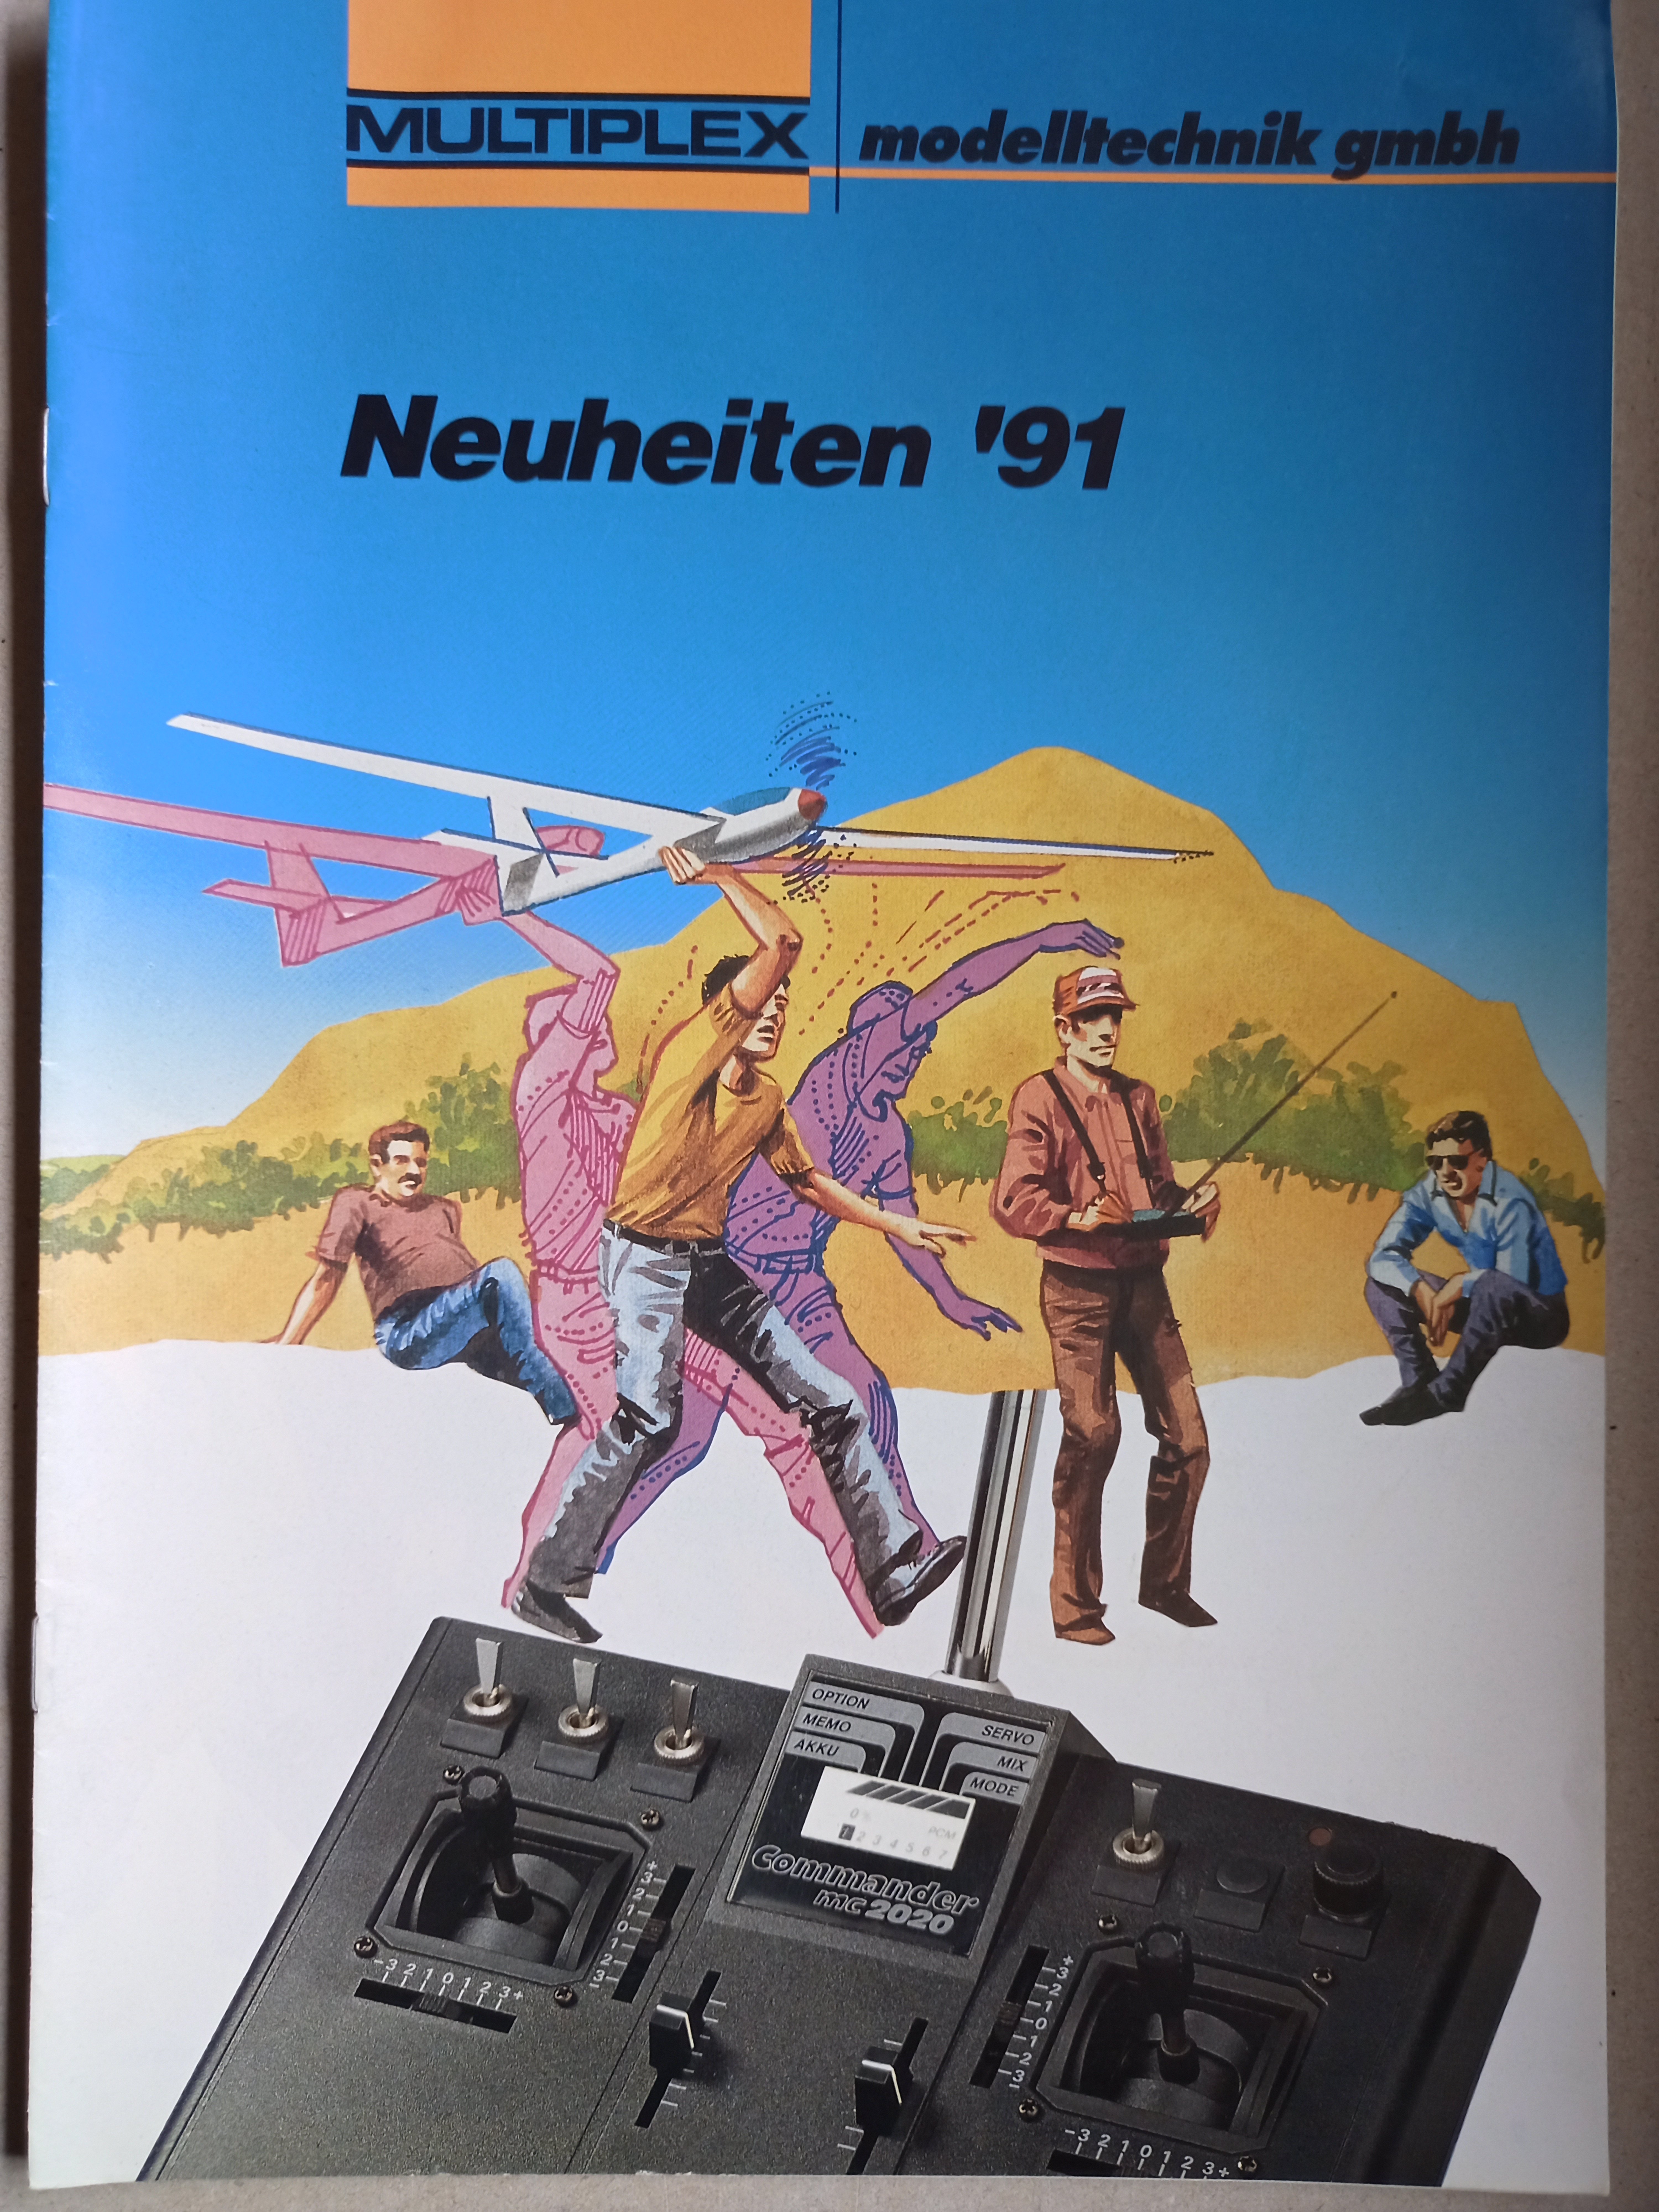 Multiplex Neuheiten 1991 (Deutsches Segelflugmuseum mit Modellflug CC BY-NC-SA)